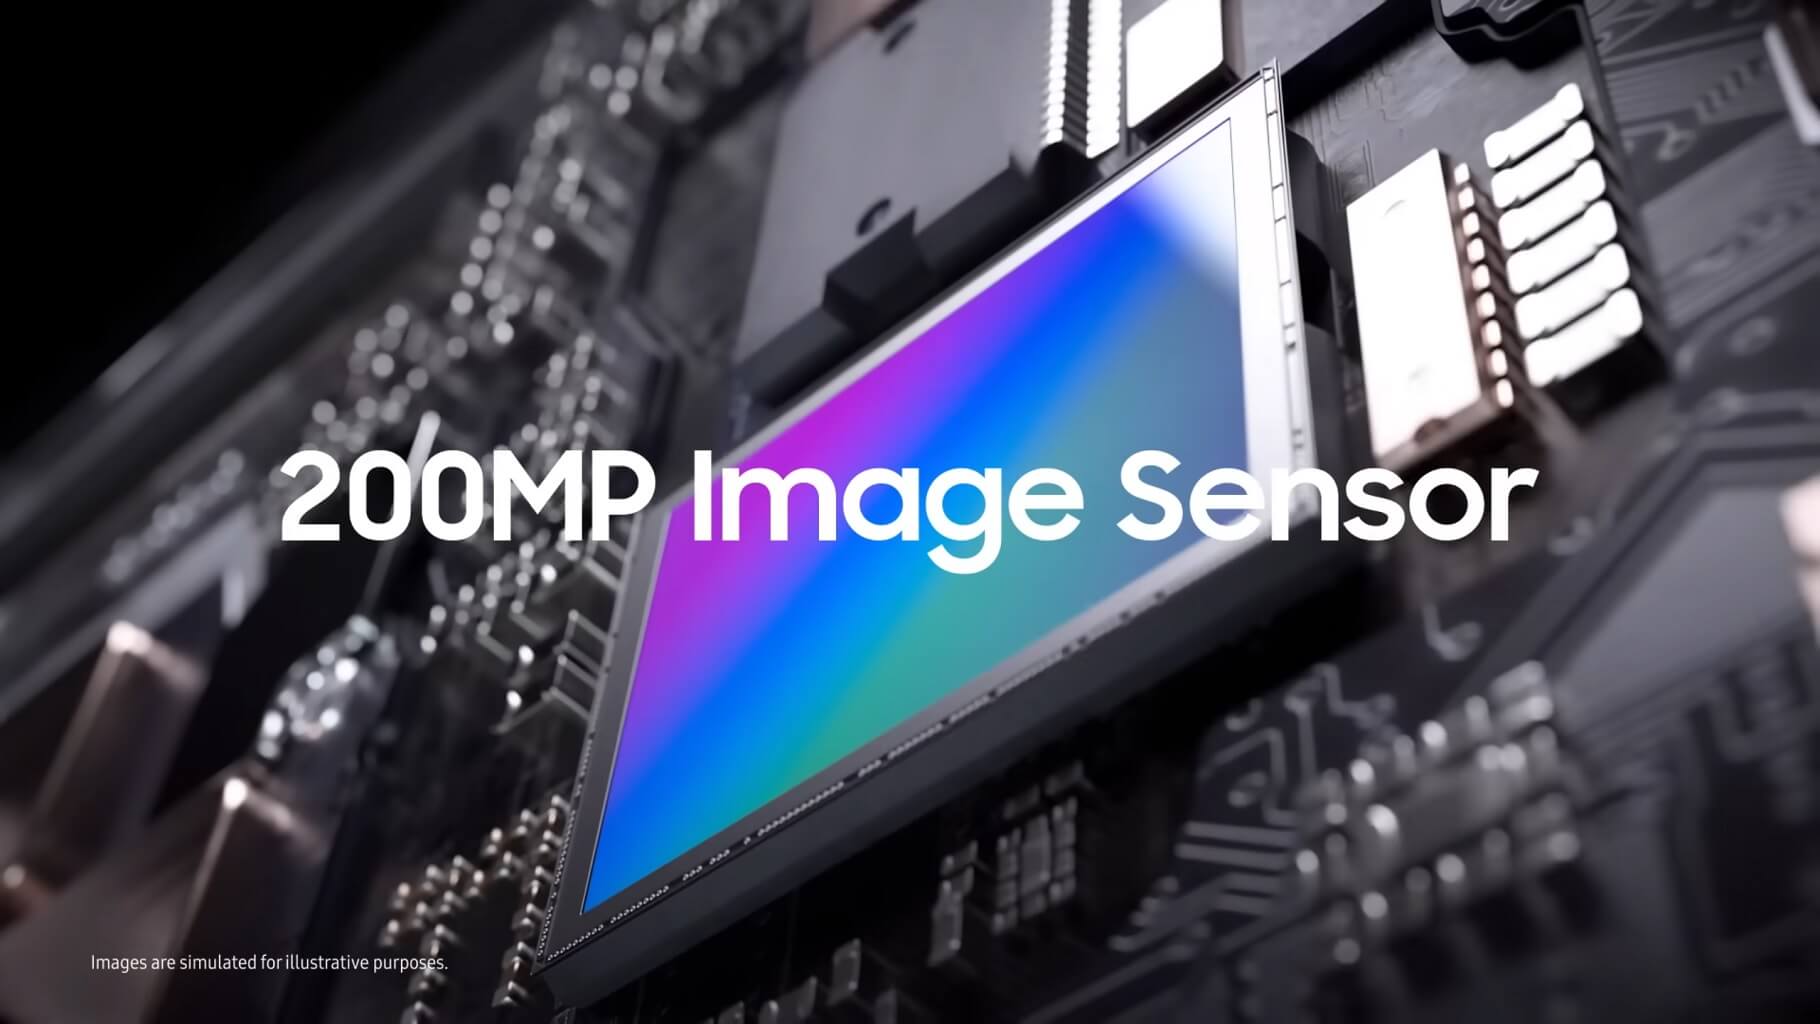 Samsung 200MP Image sensor